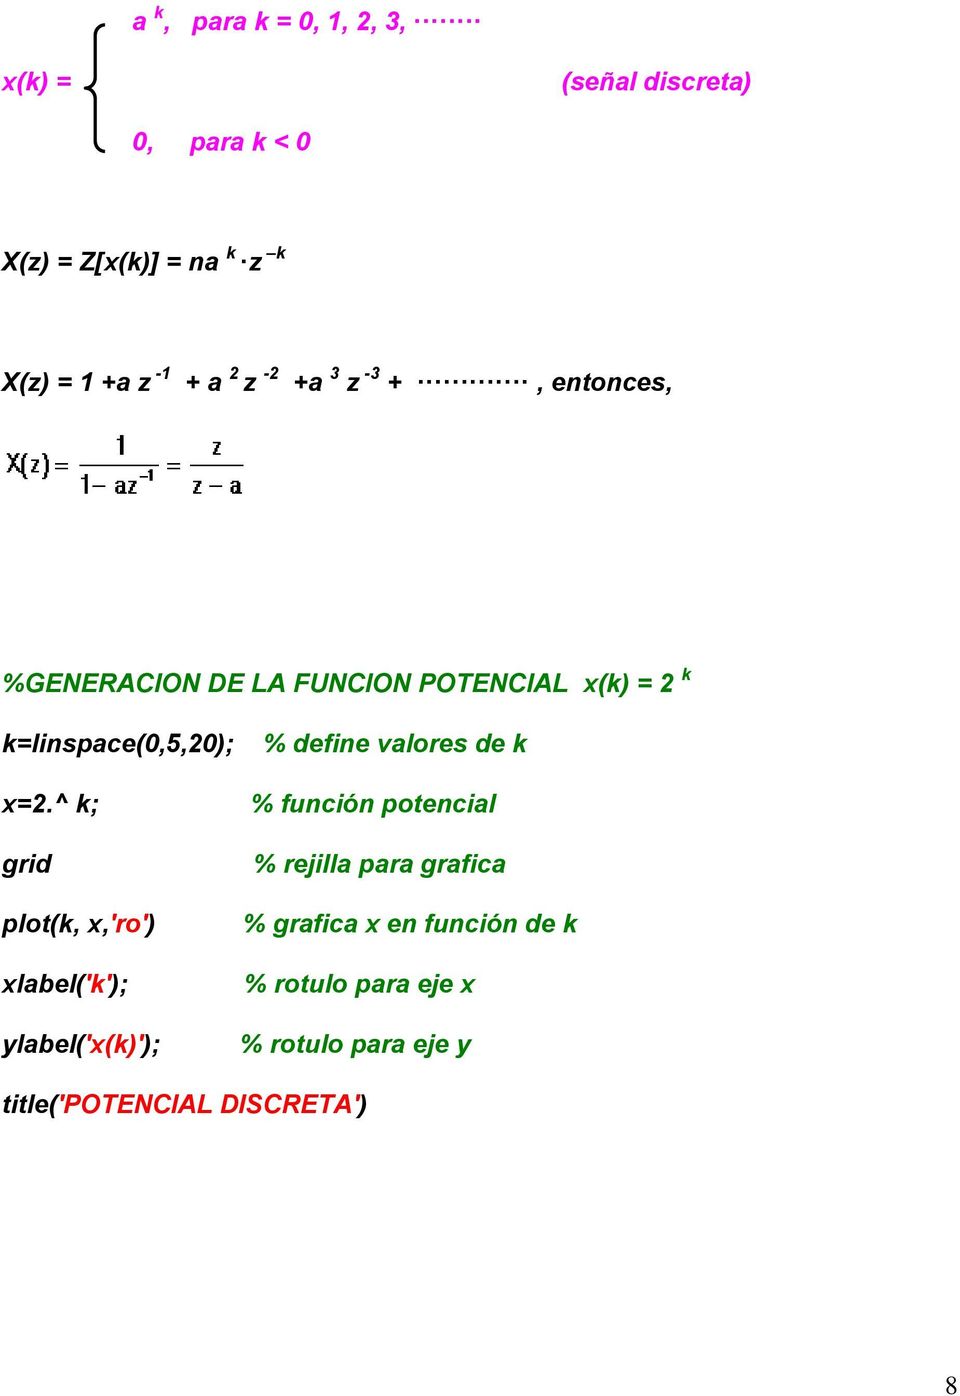 ^ k; grid plot(k, x,'ro') xlabel('k'); ylabel('x(k)'); % define valores de k % función potencial % rejilla